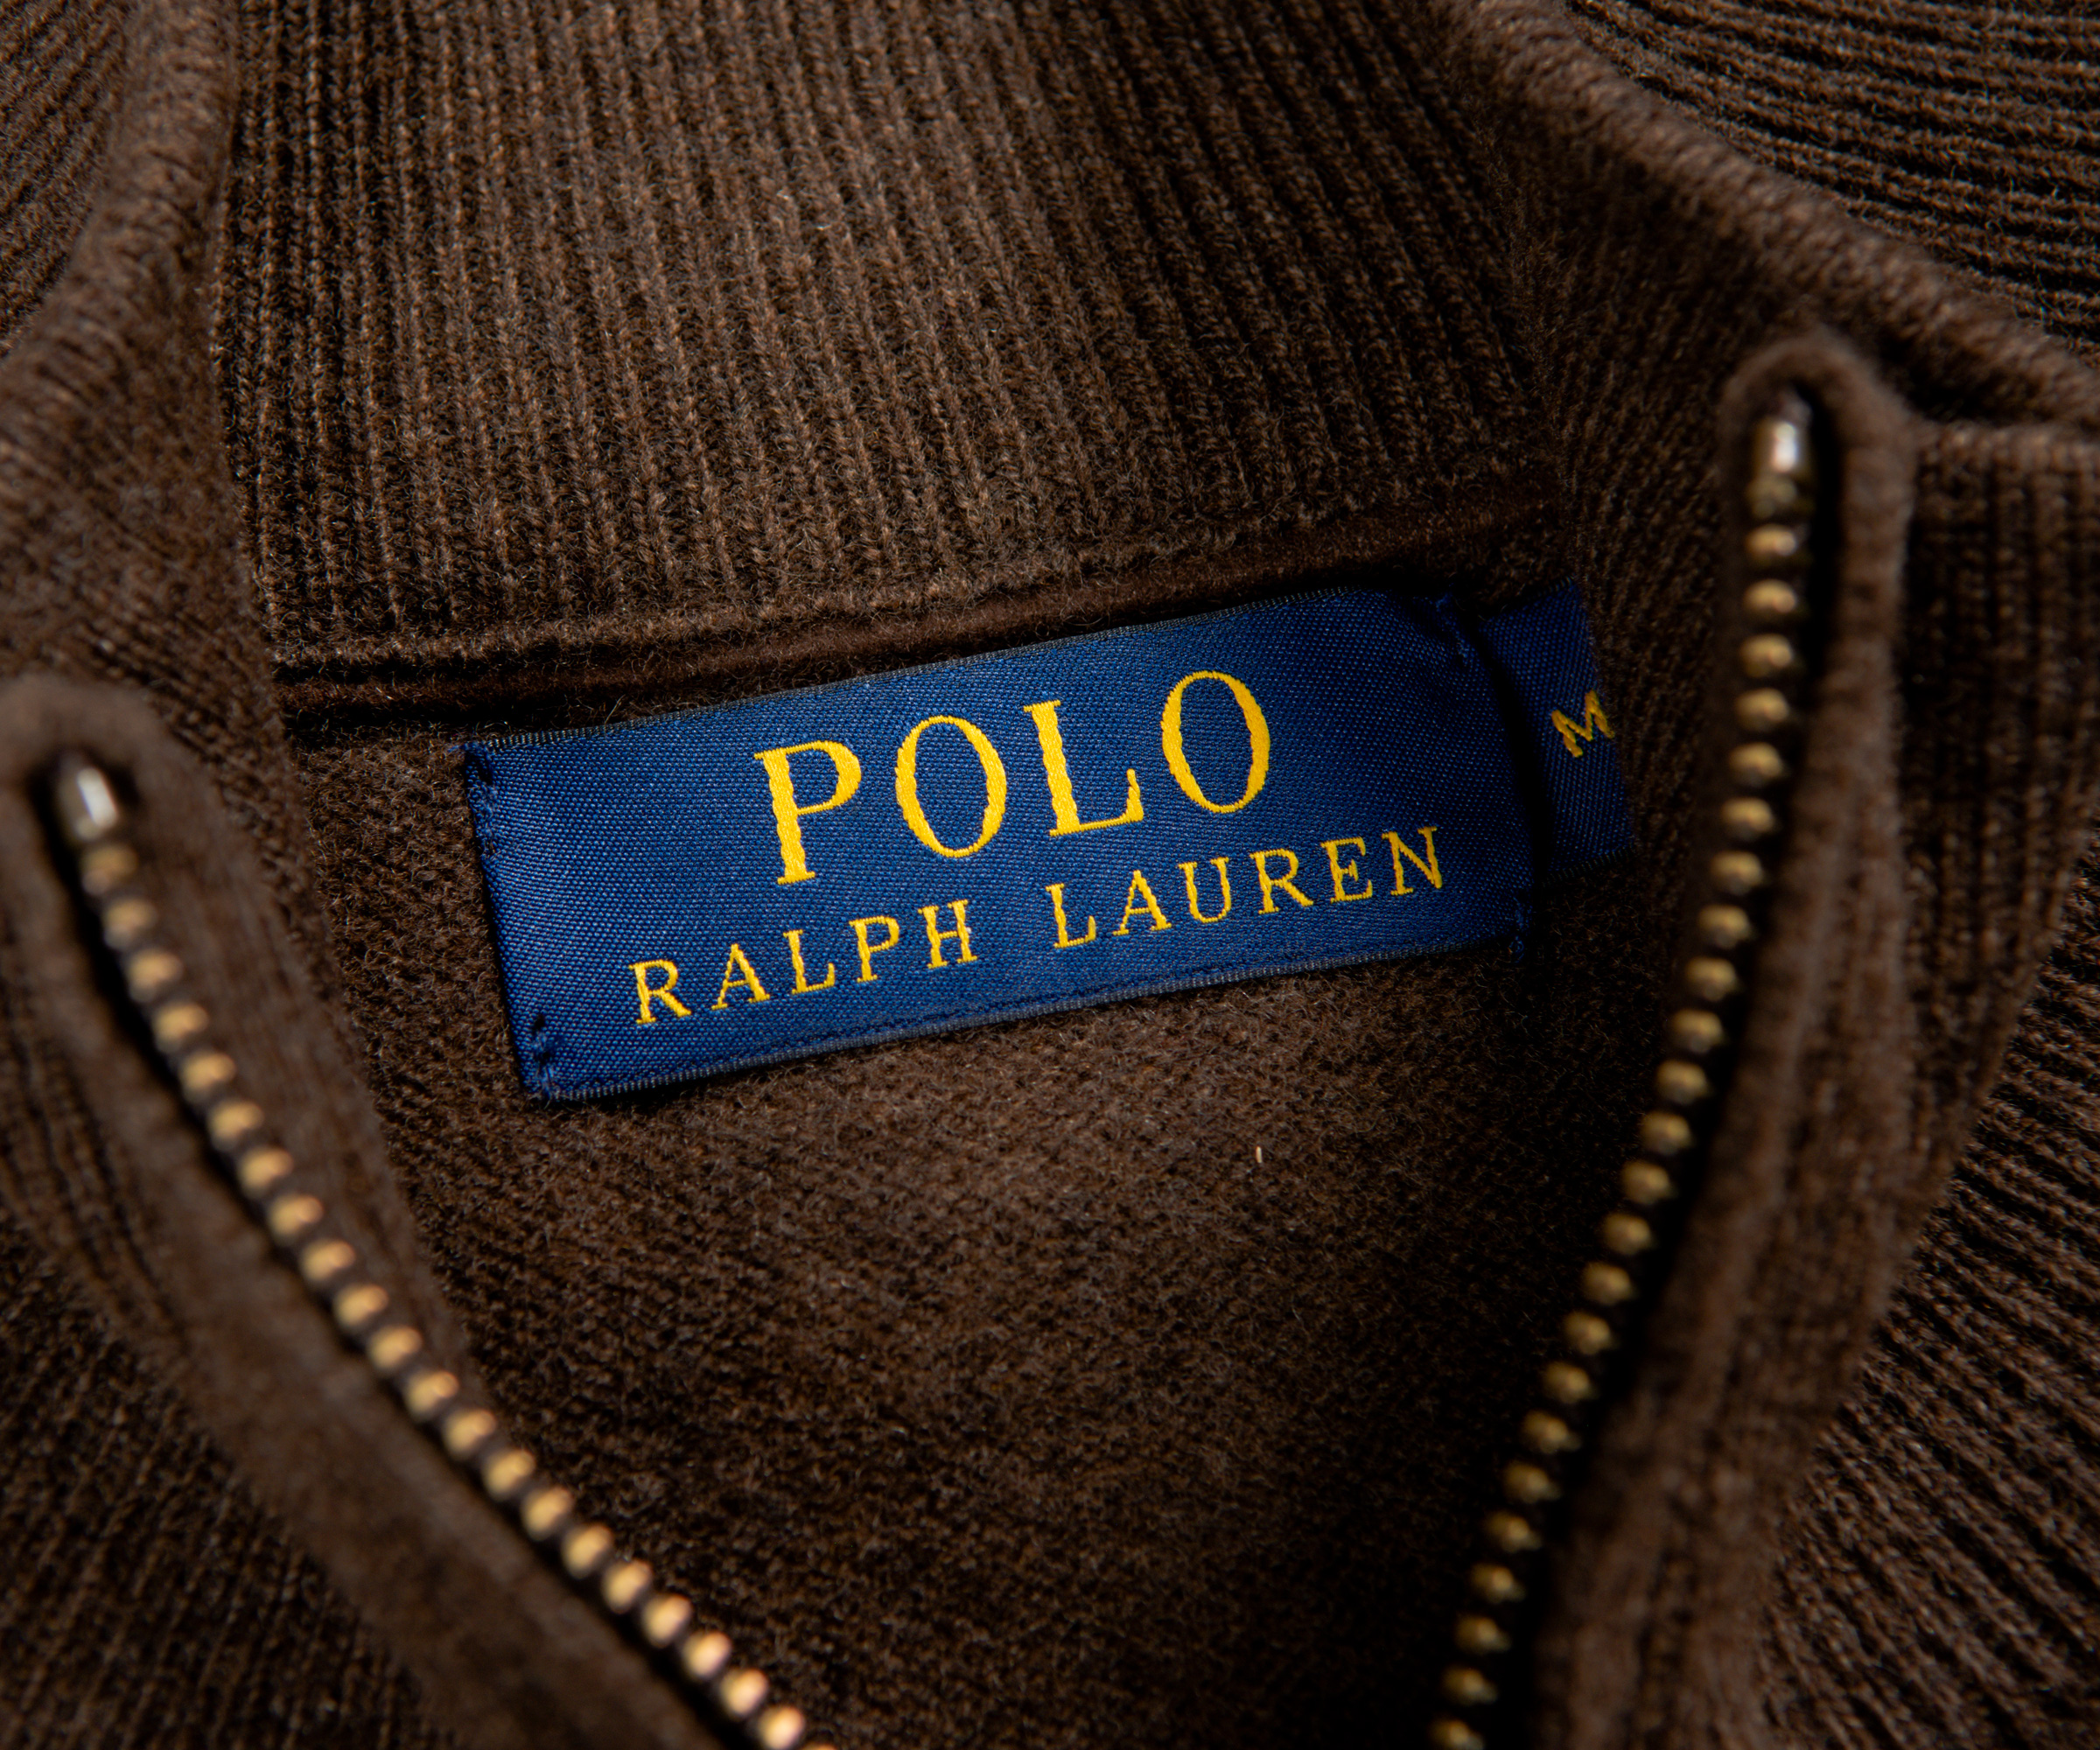 Polo Ralph Lauren Ralph Lauren 1/4 Zip Wool Knit Brown